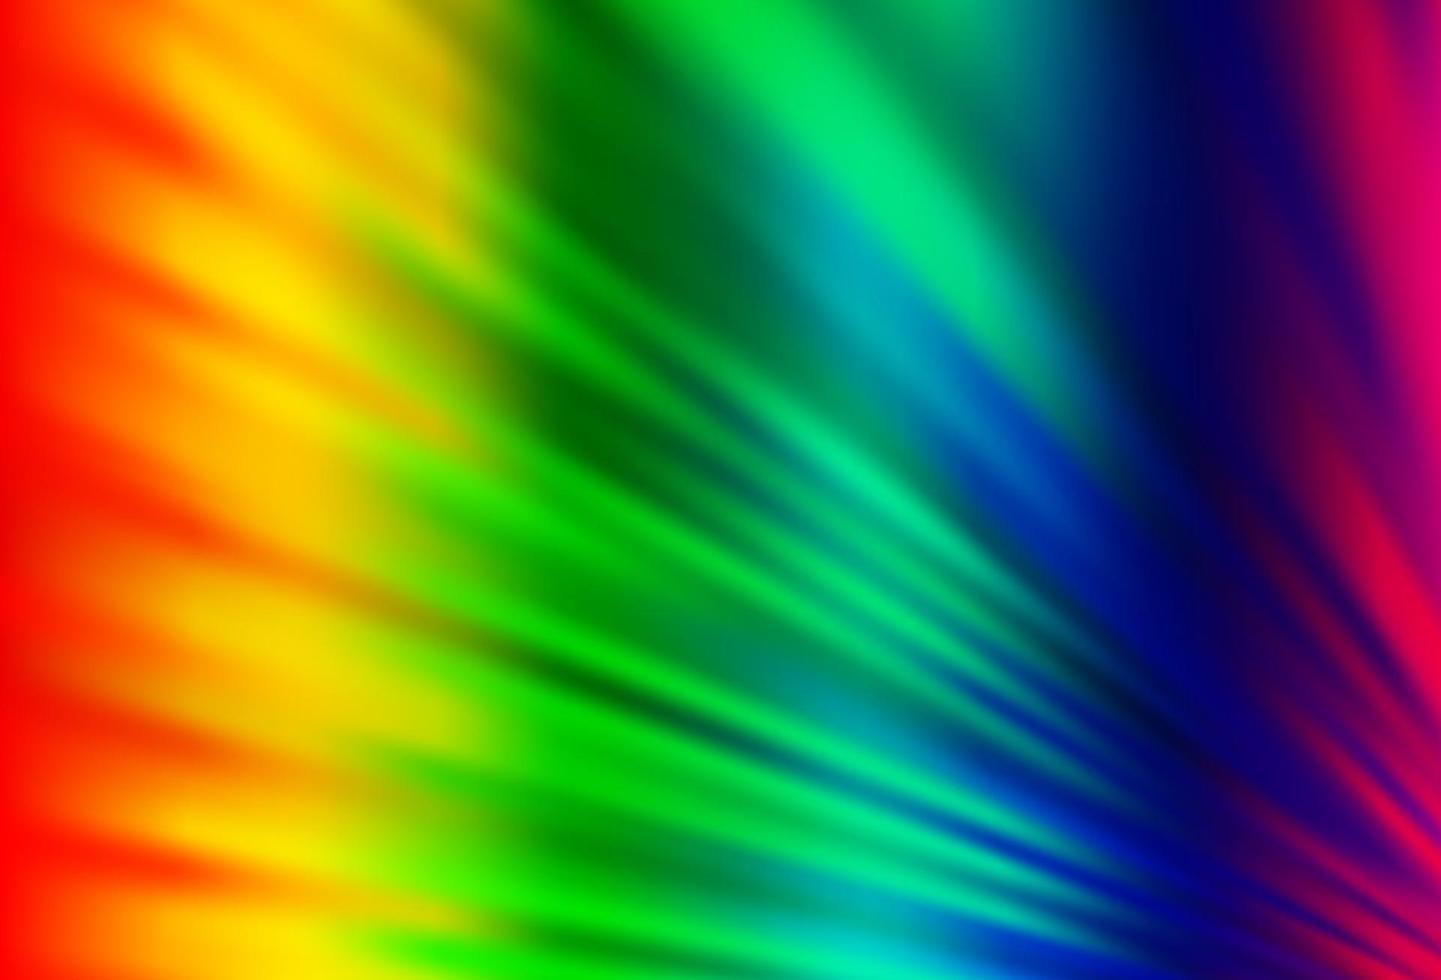 helle mehrfarbige, regenbogenfarbene Vektortextur mit farbigen Linien. vektor